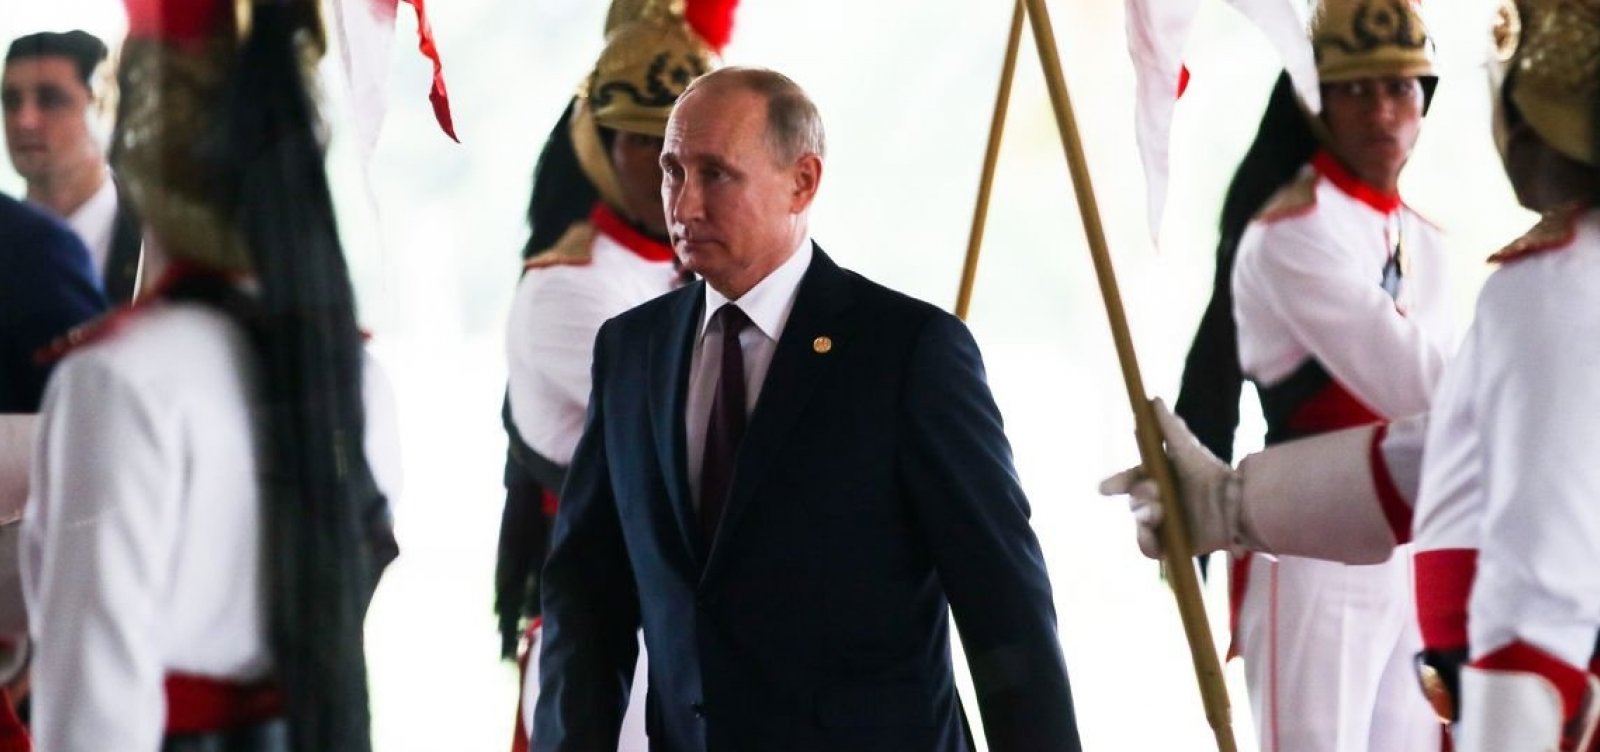 Putin diz que punições por doping devem ser individuais